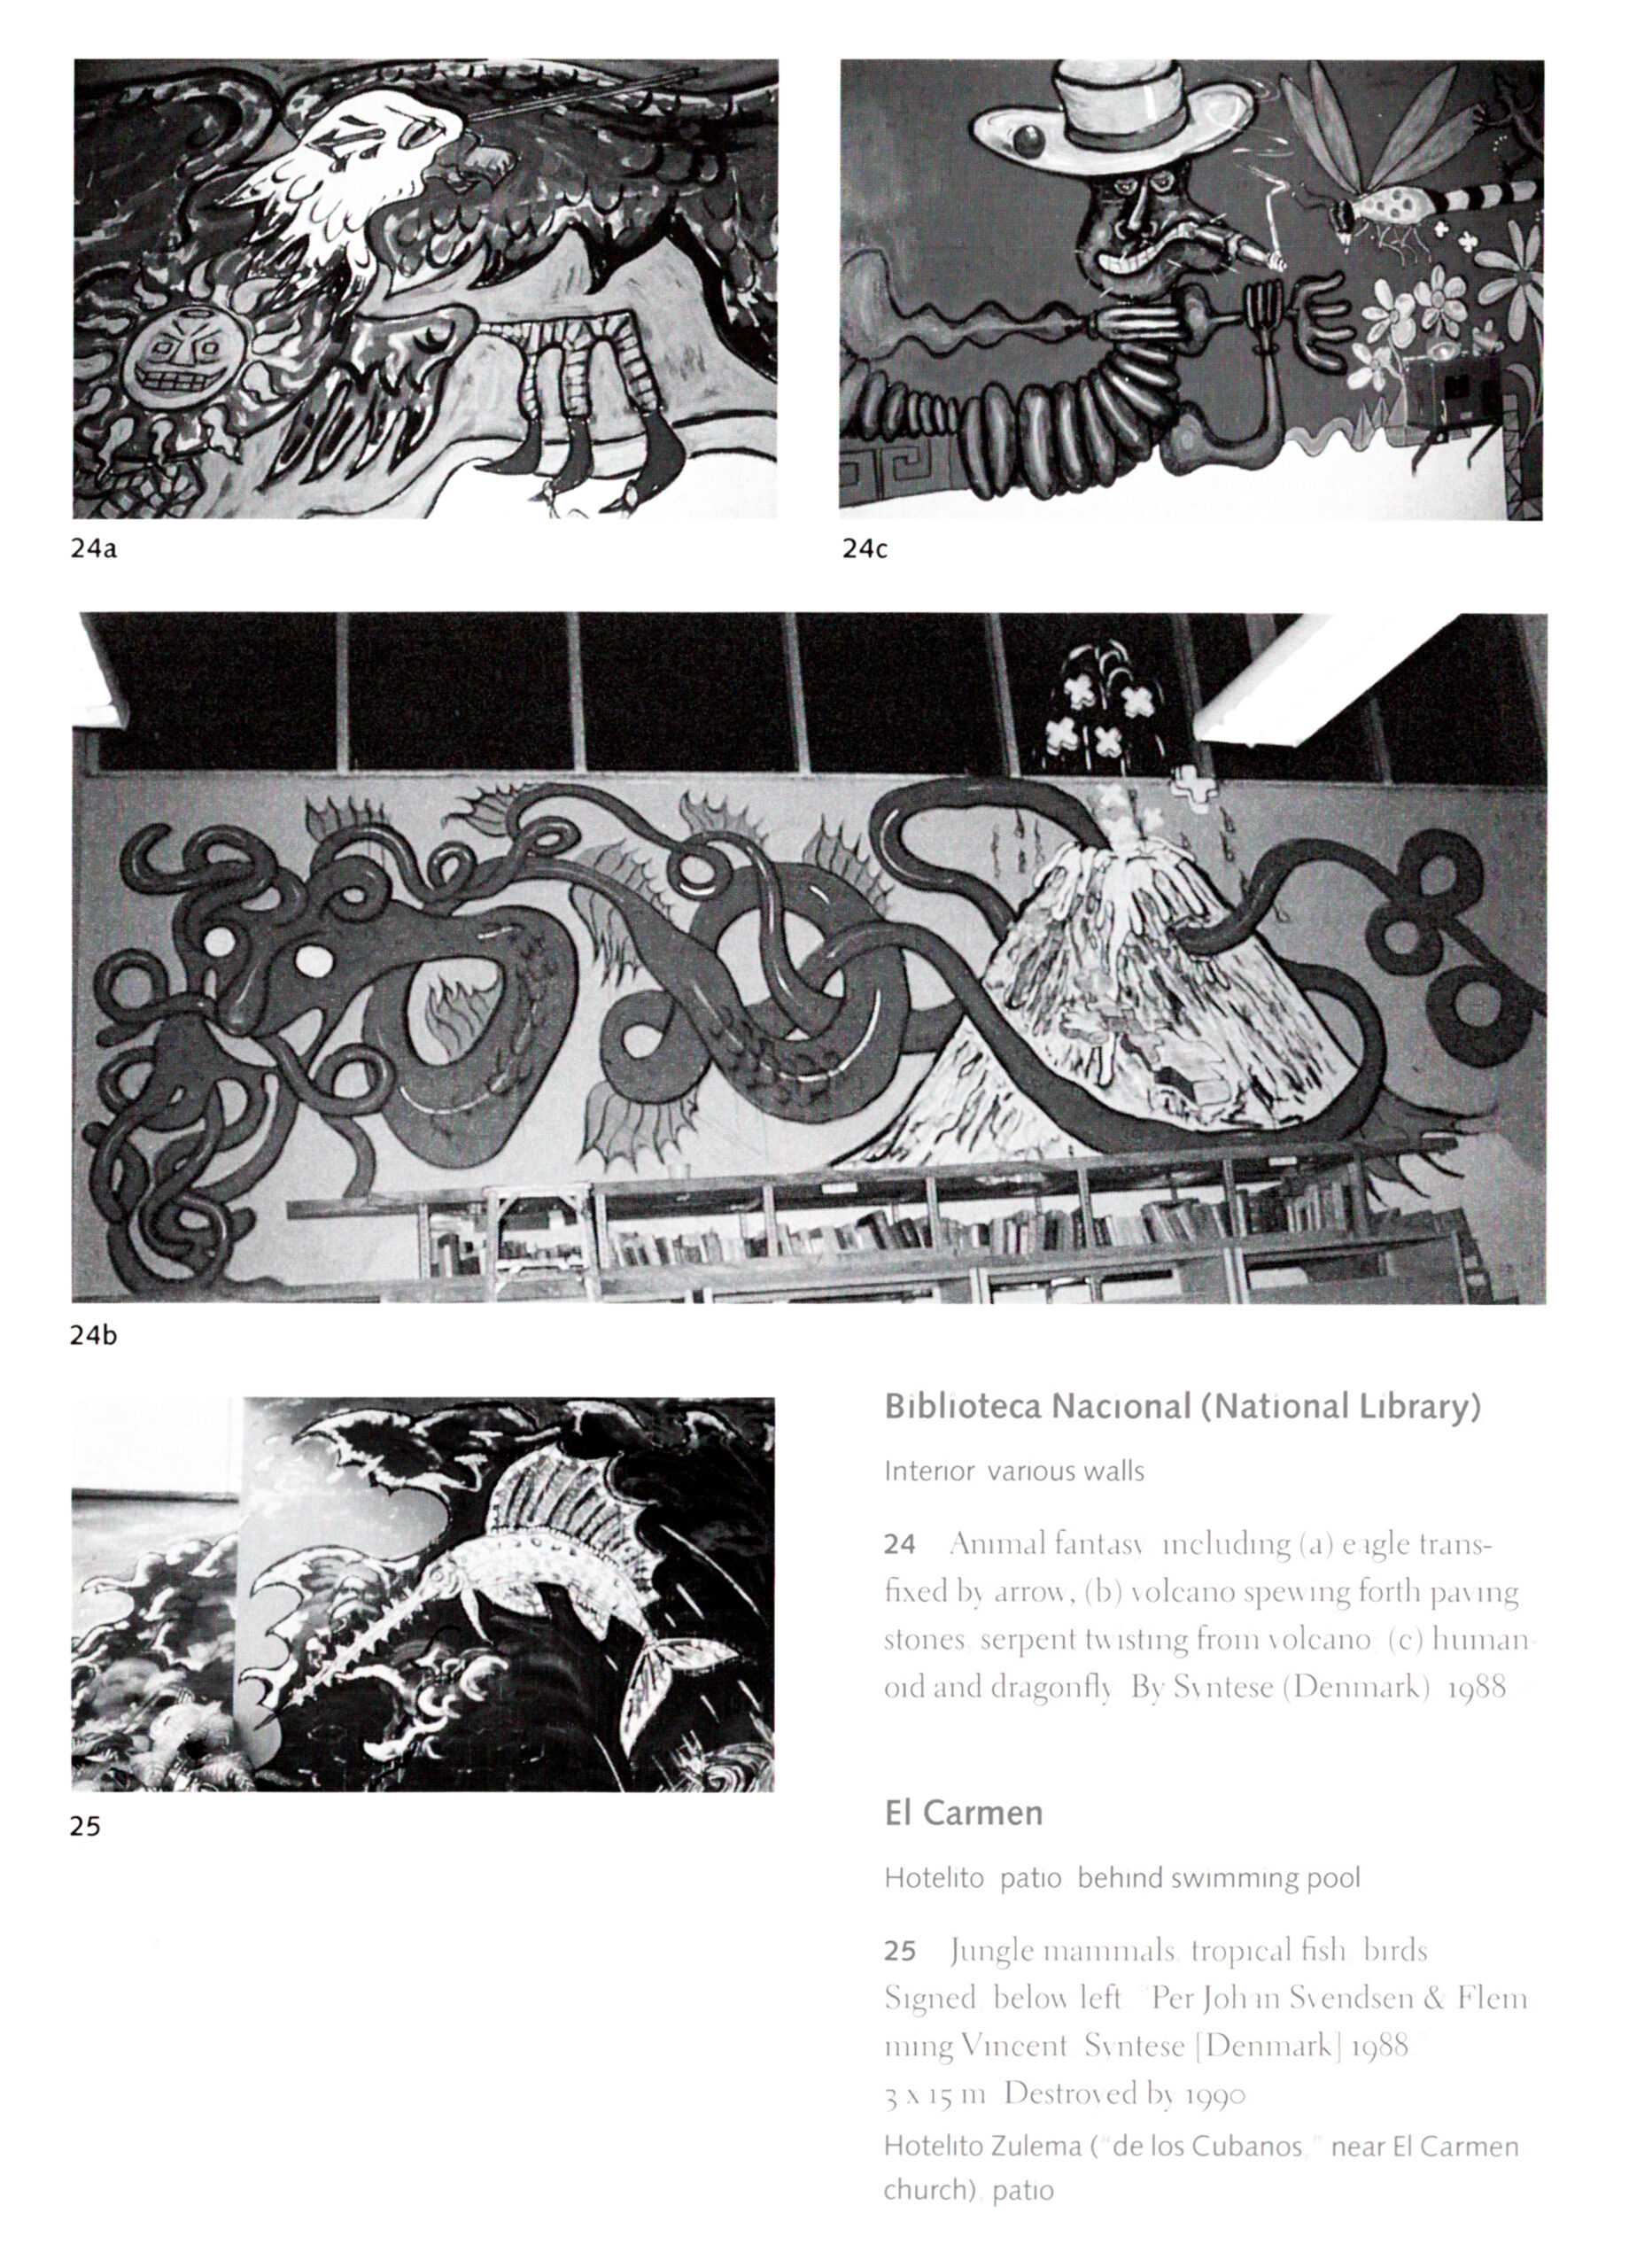 Biblioteca Nacional og El Carmen. Væg- og murmalerier, Managua, Nicaragua. Fra bogen The Murals of revolutionary Nicaragua. David Kunzle. Univercity of California. Dateret 1995.